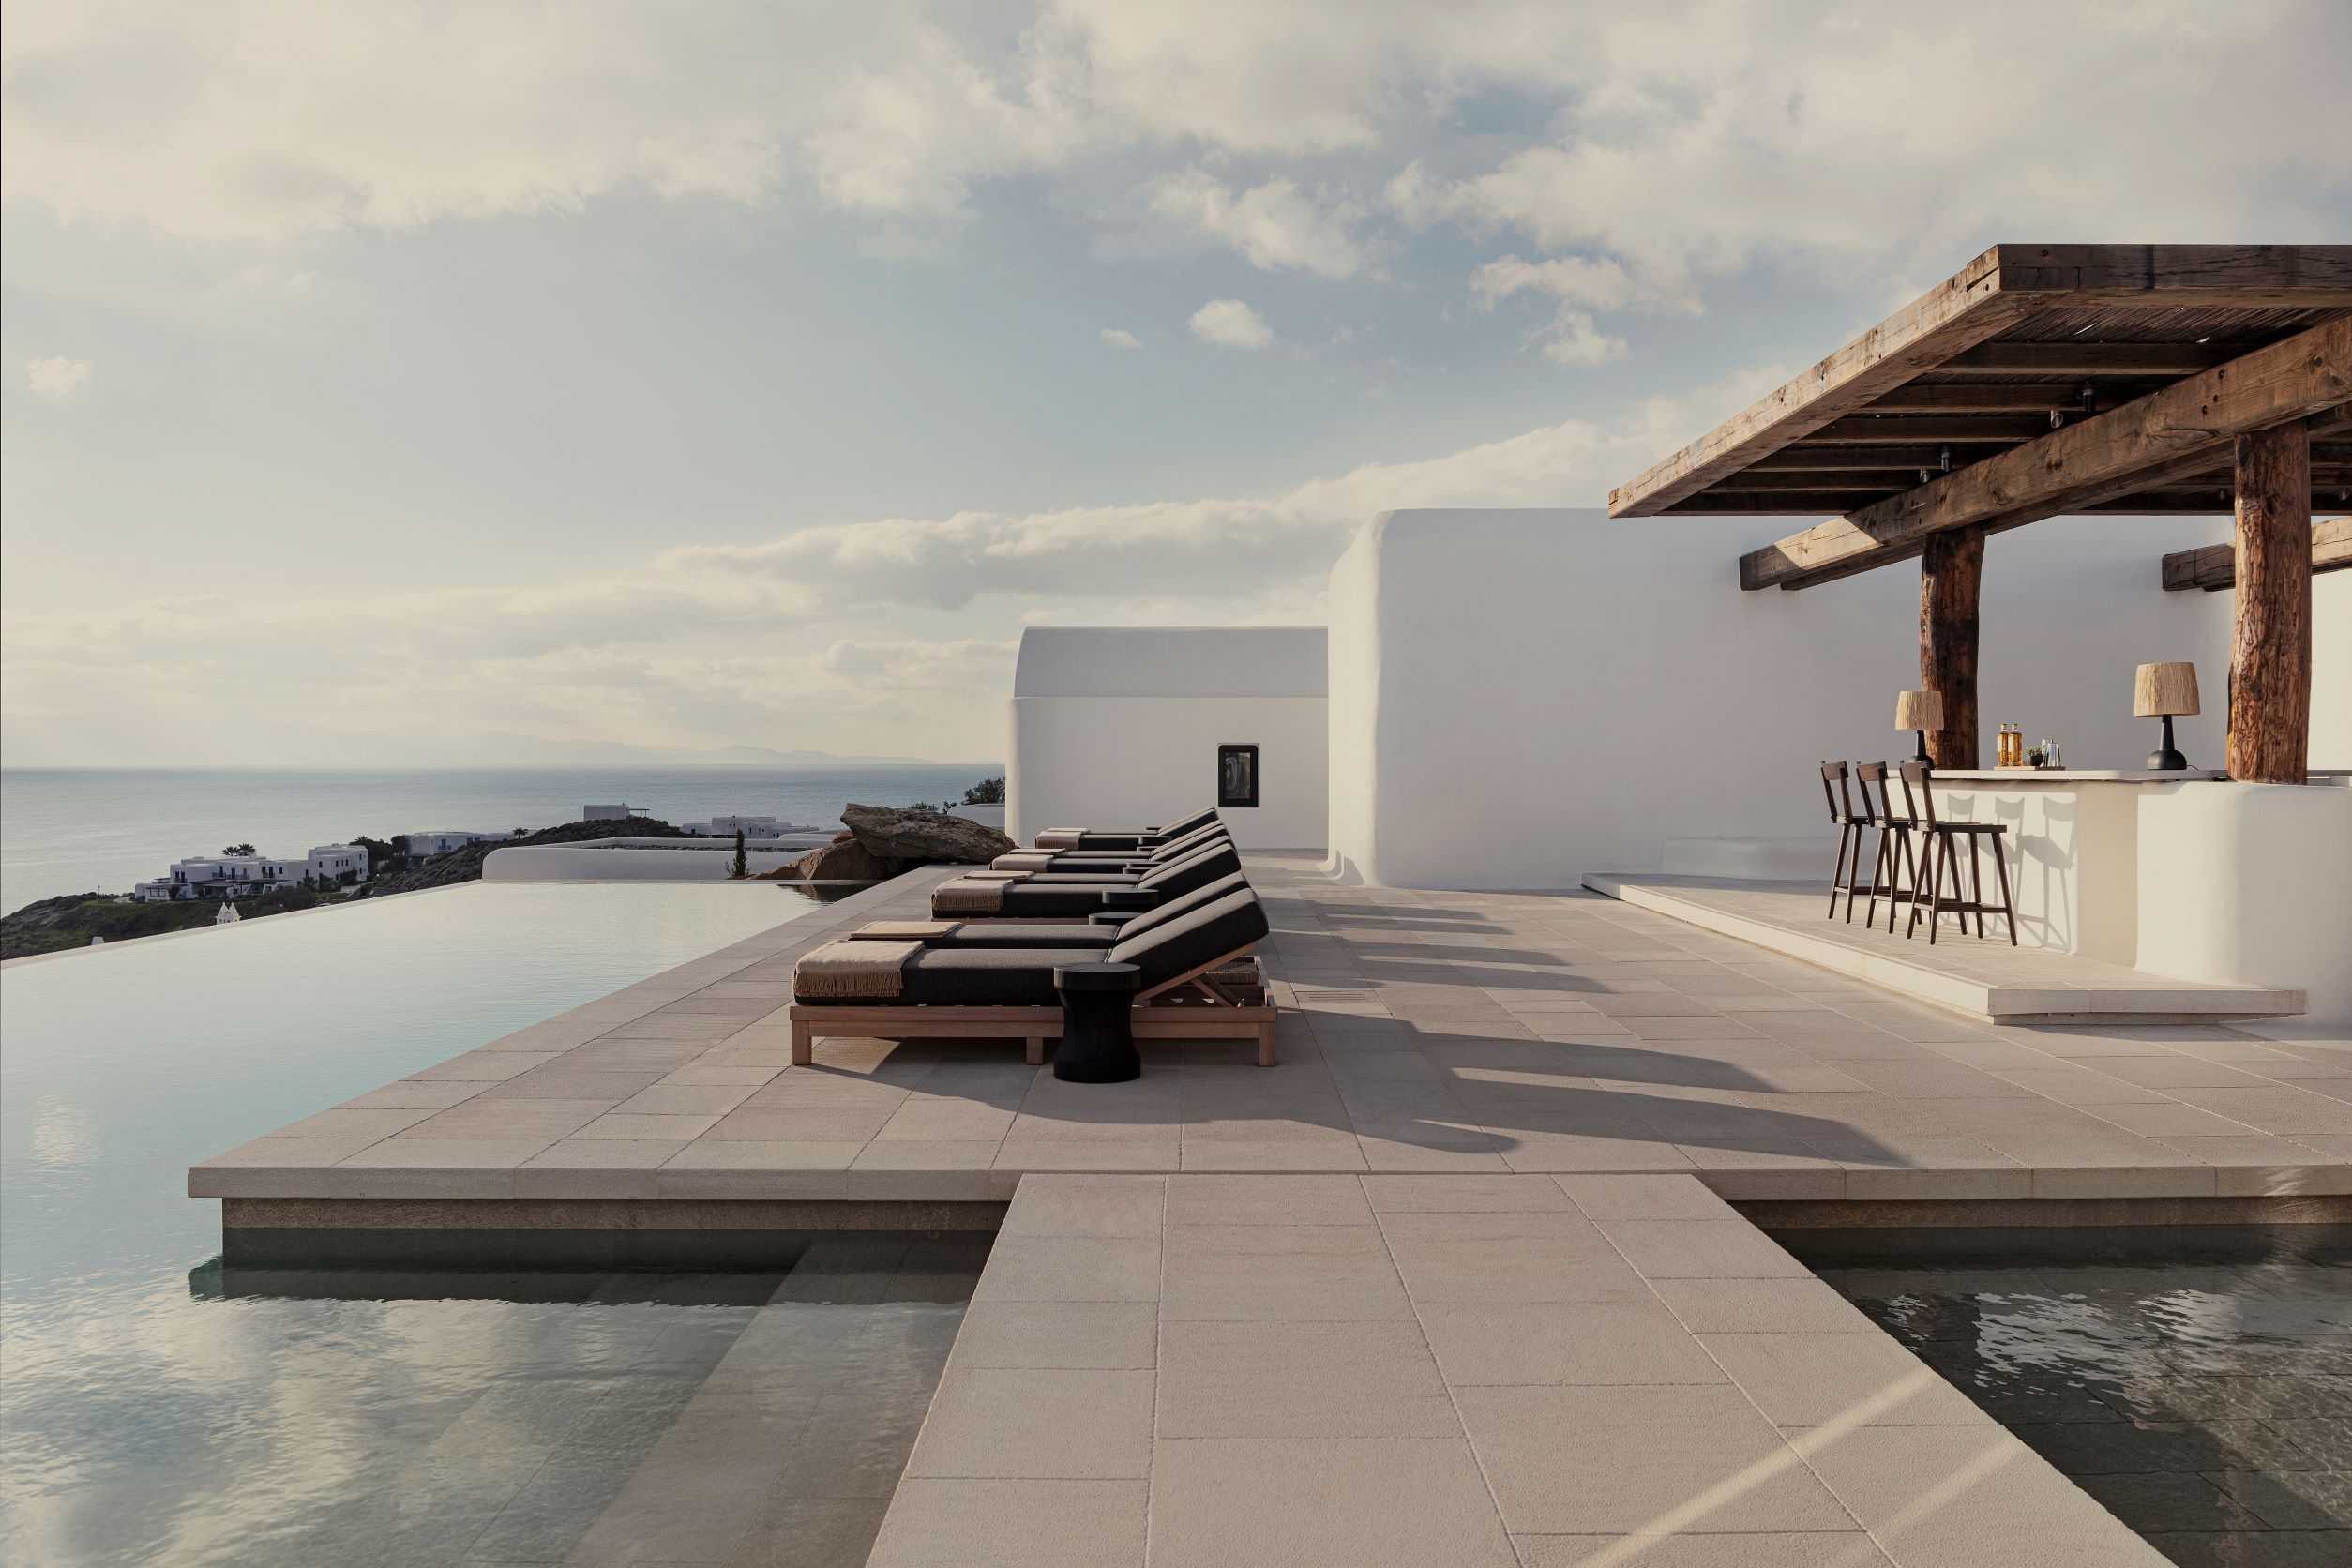 12 BEST NEW HOTELS in MYKONOS, GREECE in 2022